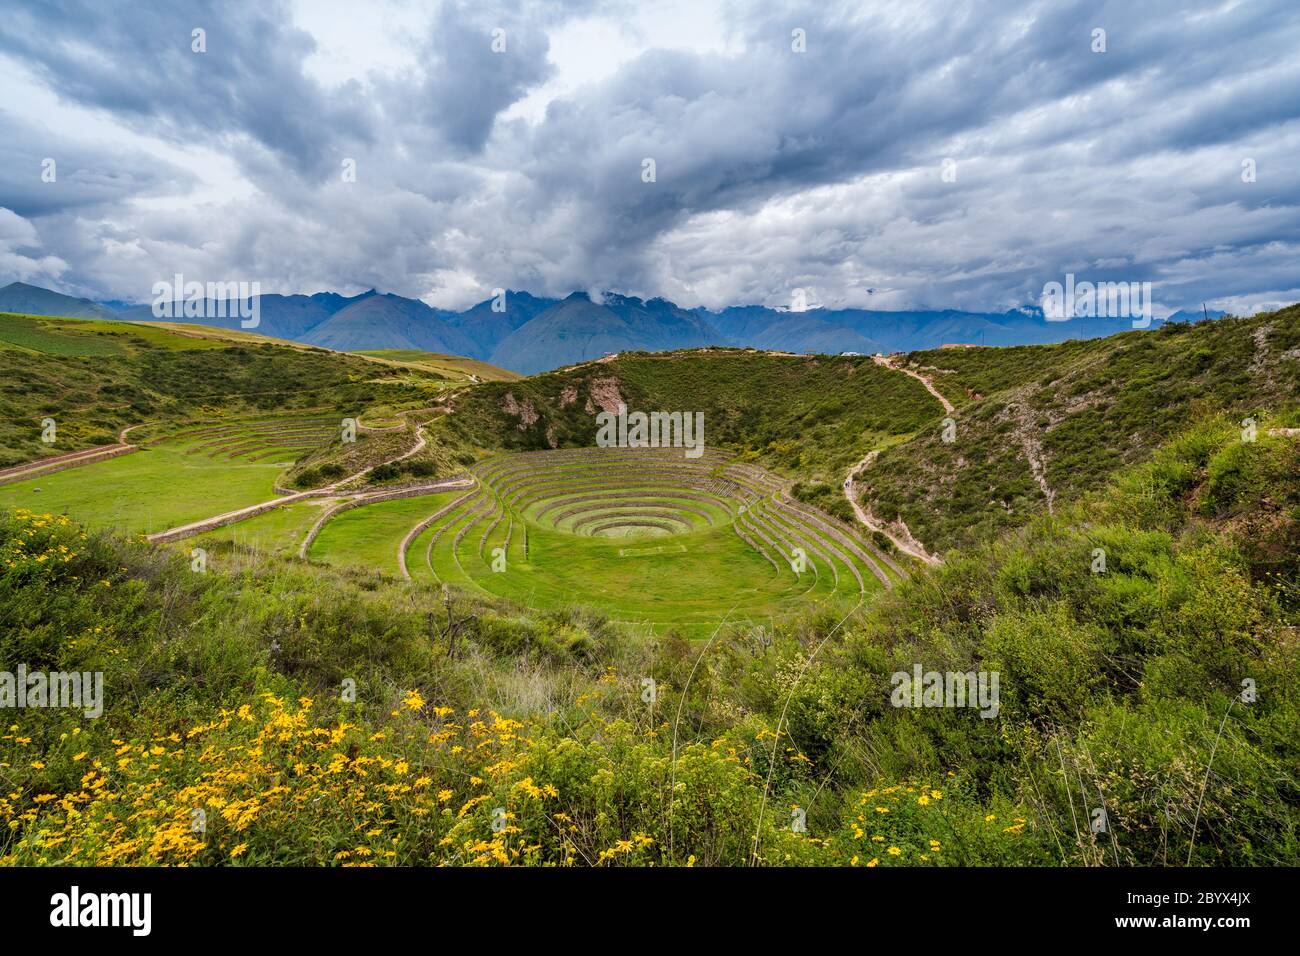 Terrazze Inca circolari di Moray, un sito archeologico nella Valle Sacra degli Incas, Cusco Regione, Perù, Sud America. Foto Stock